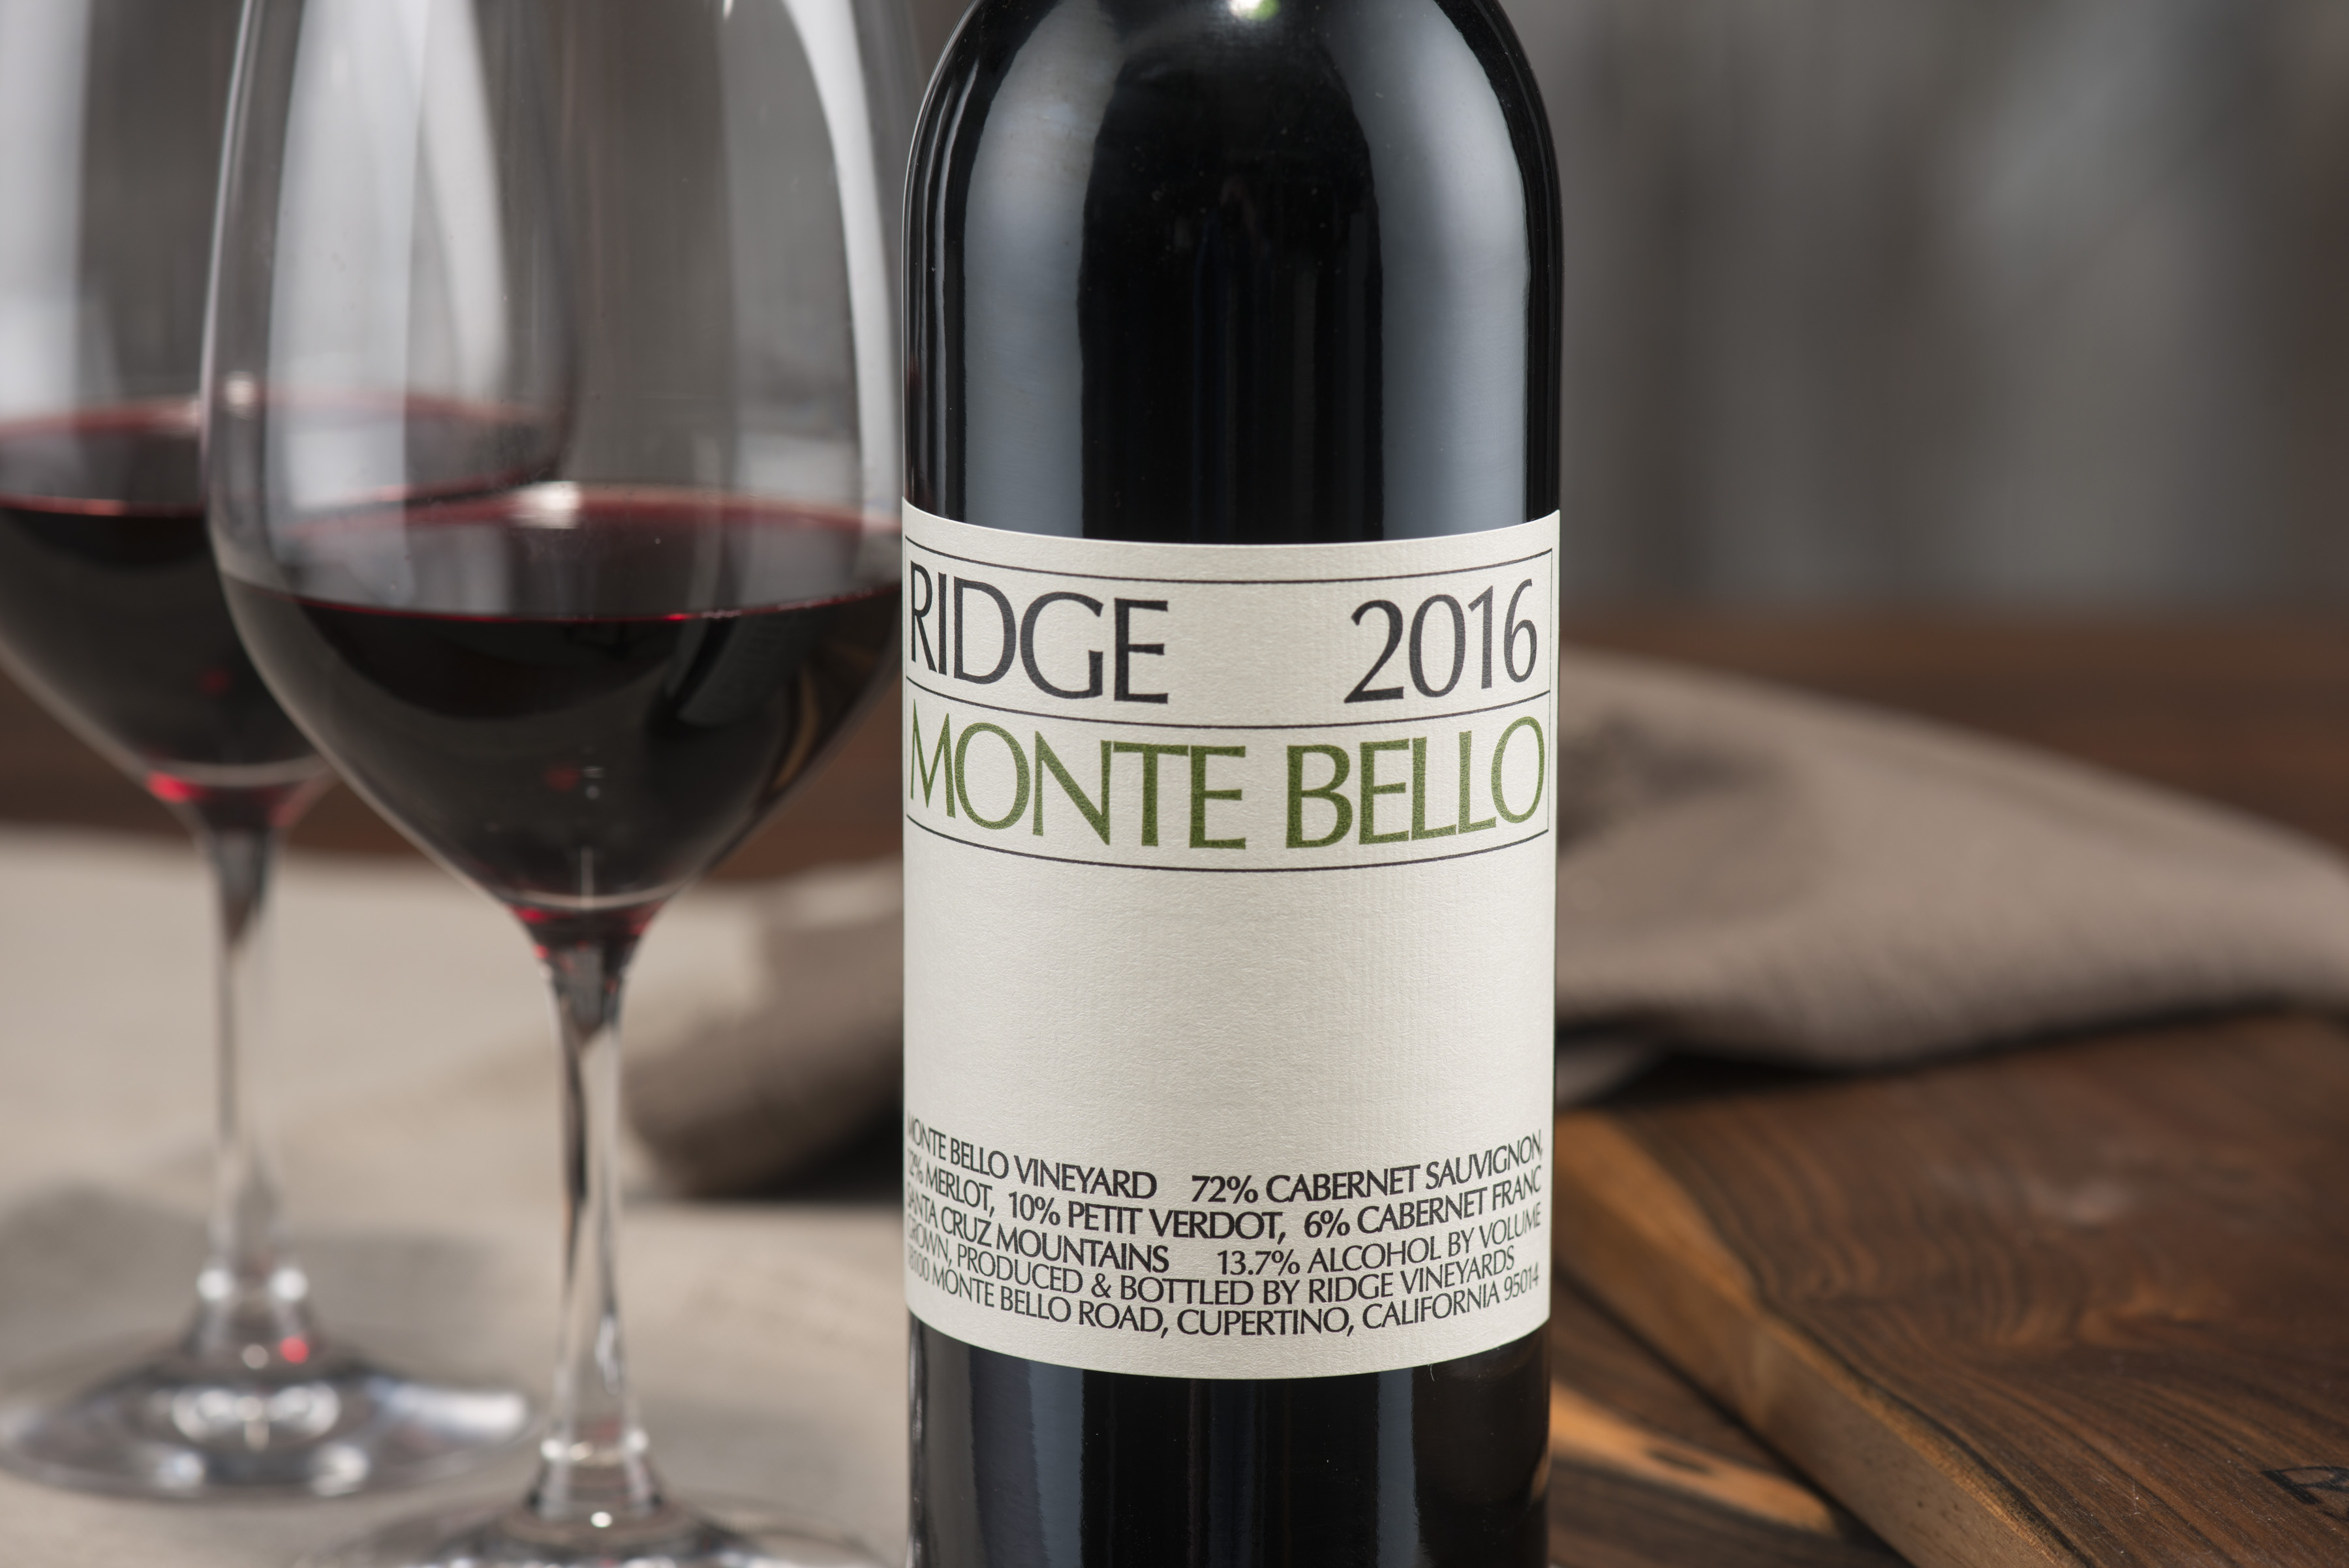 2016 Monte Bello and wine glasses.